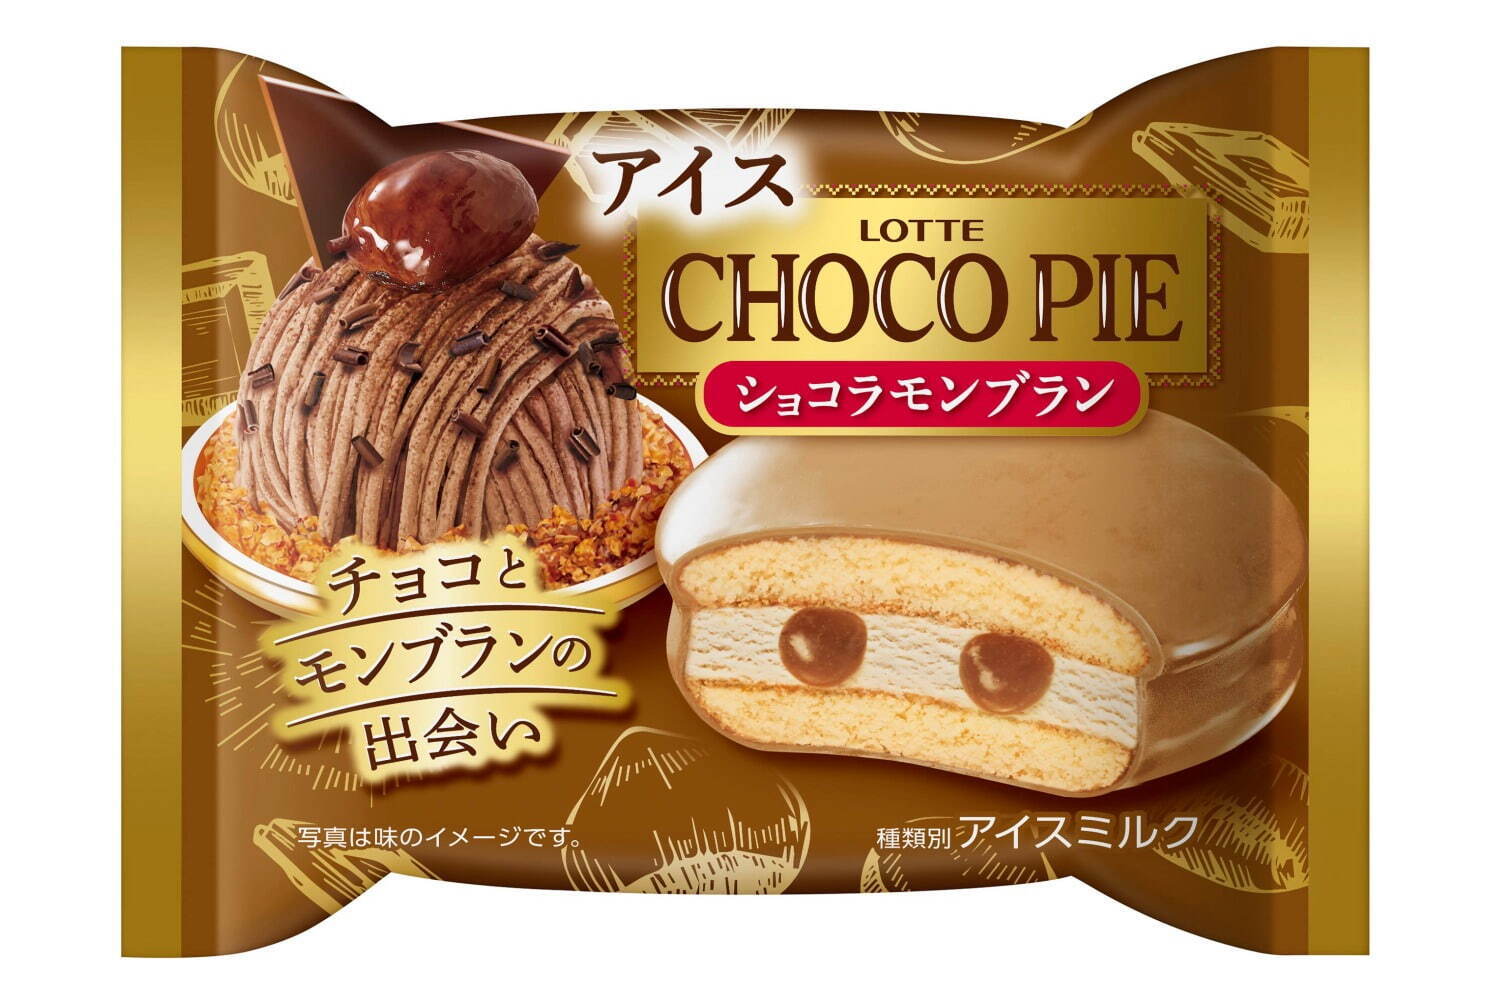 「チョコパイアイス ショコラモンブラン」216円